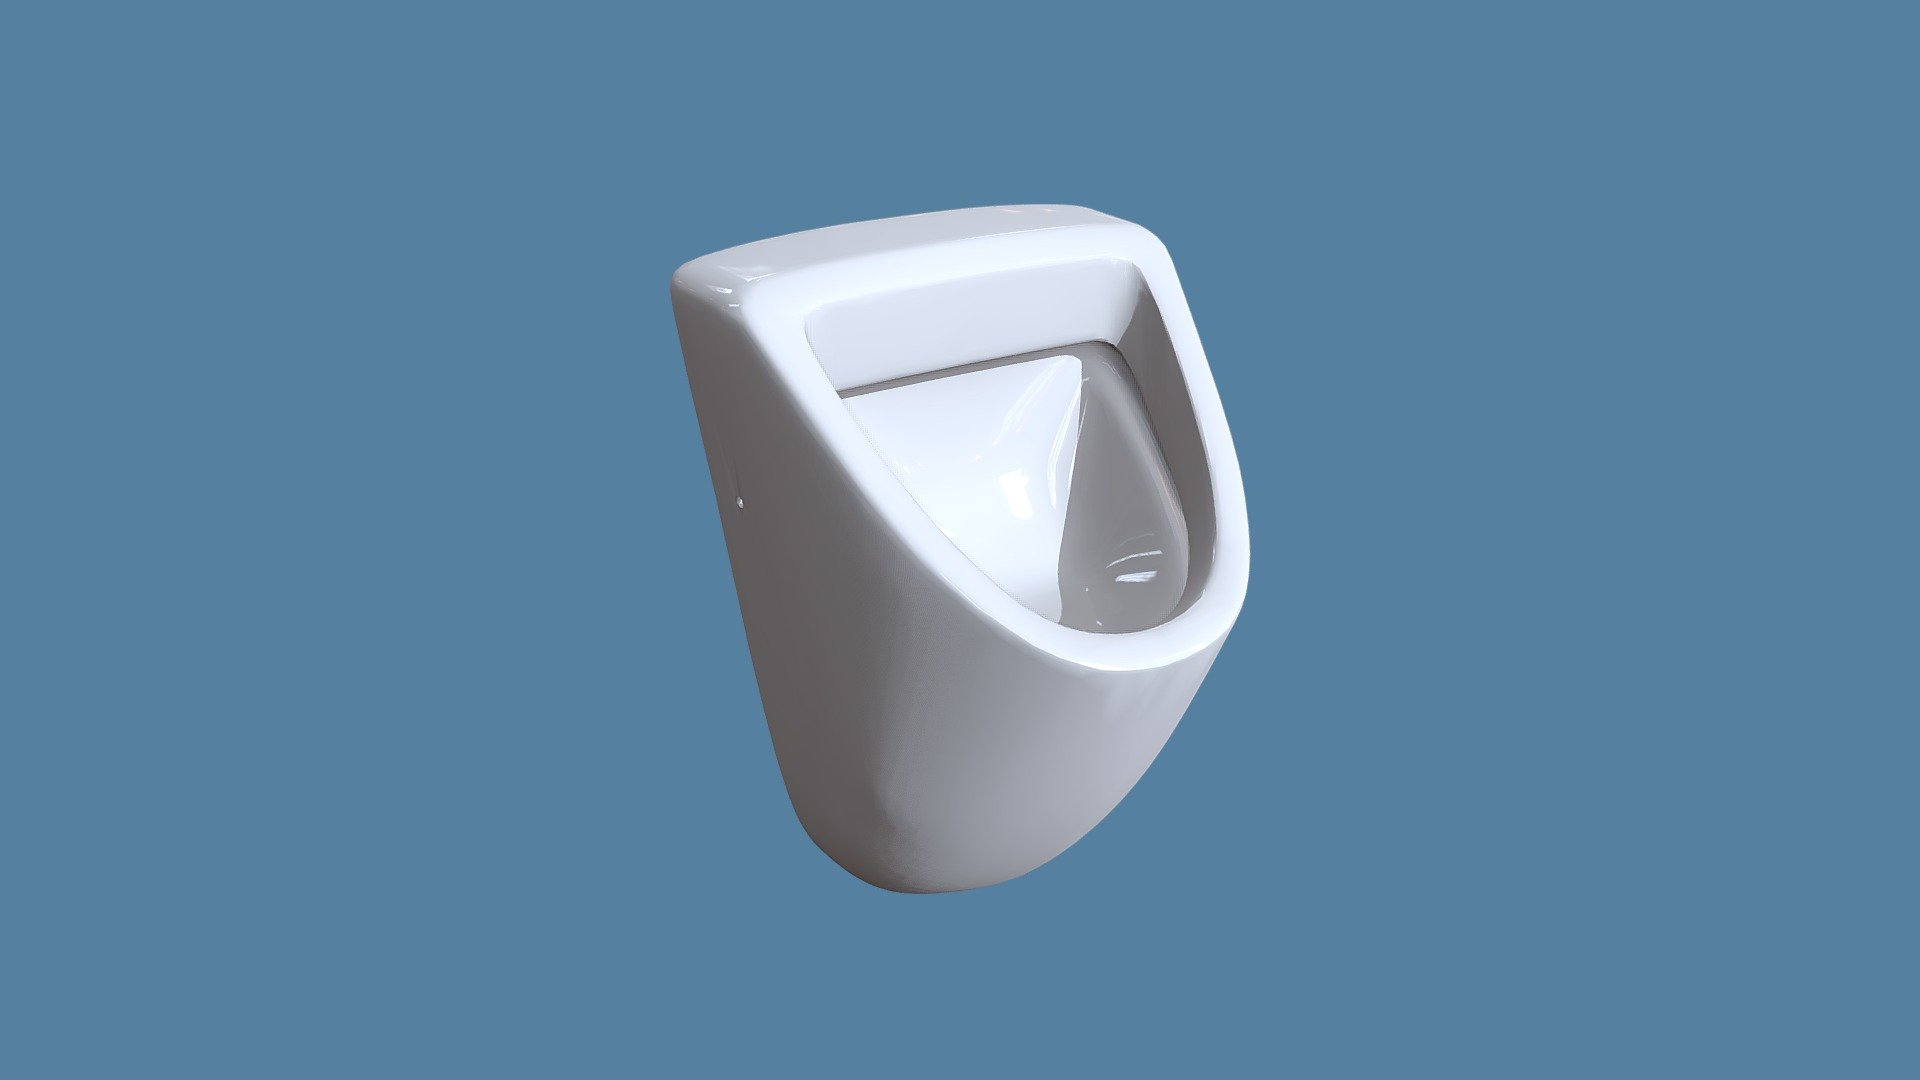 Bau Urinal Porcelain - 3D model by wemakeit3d 3d model